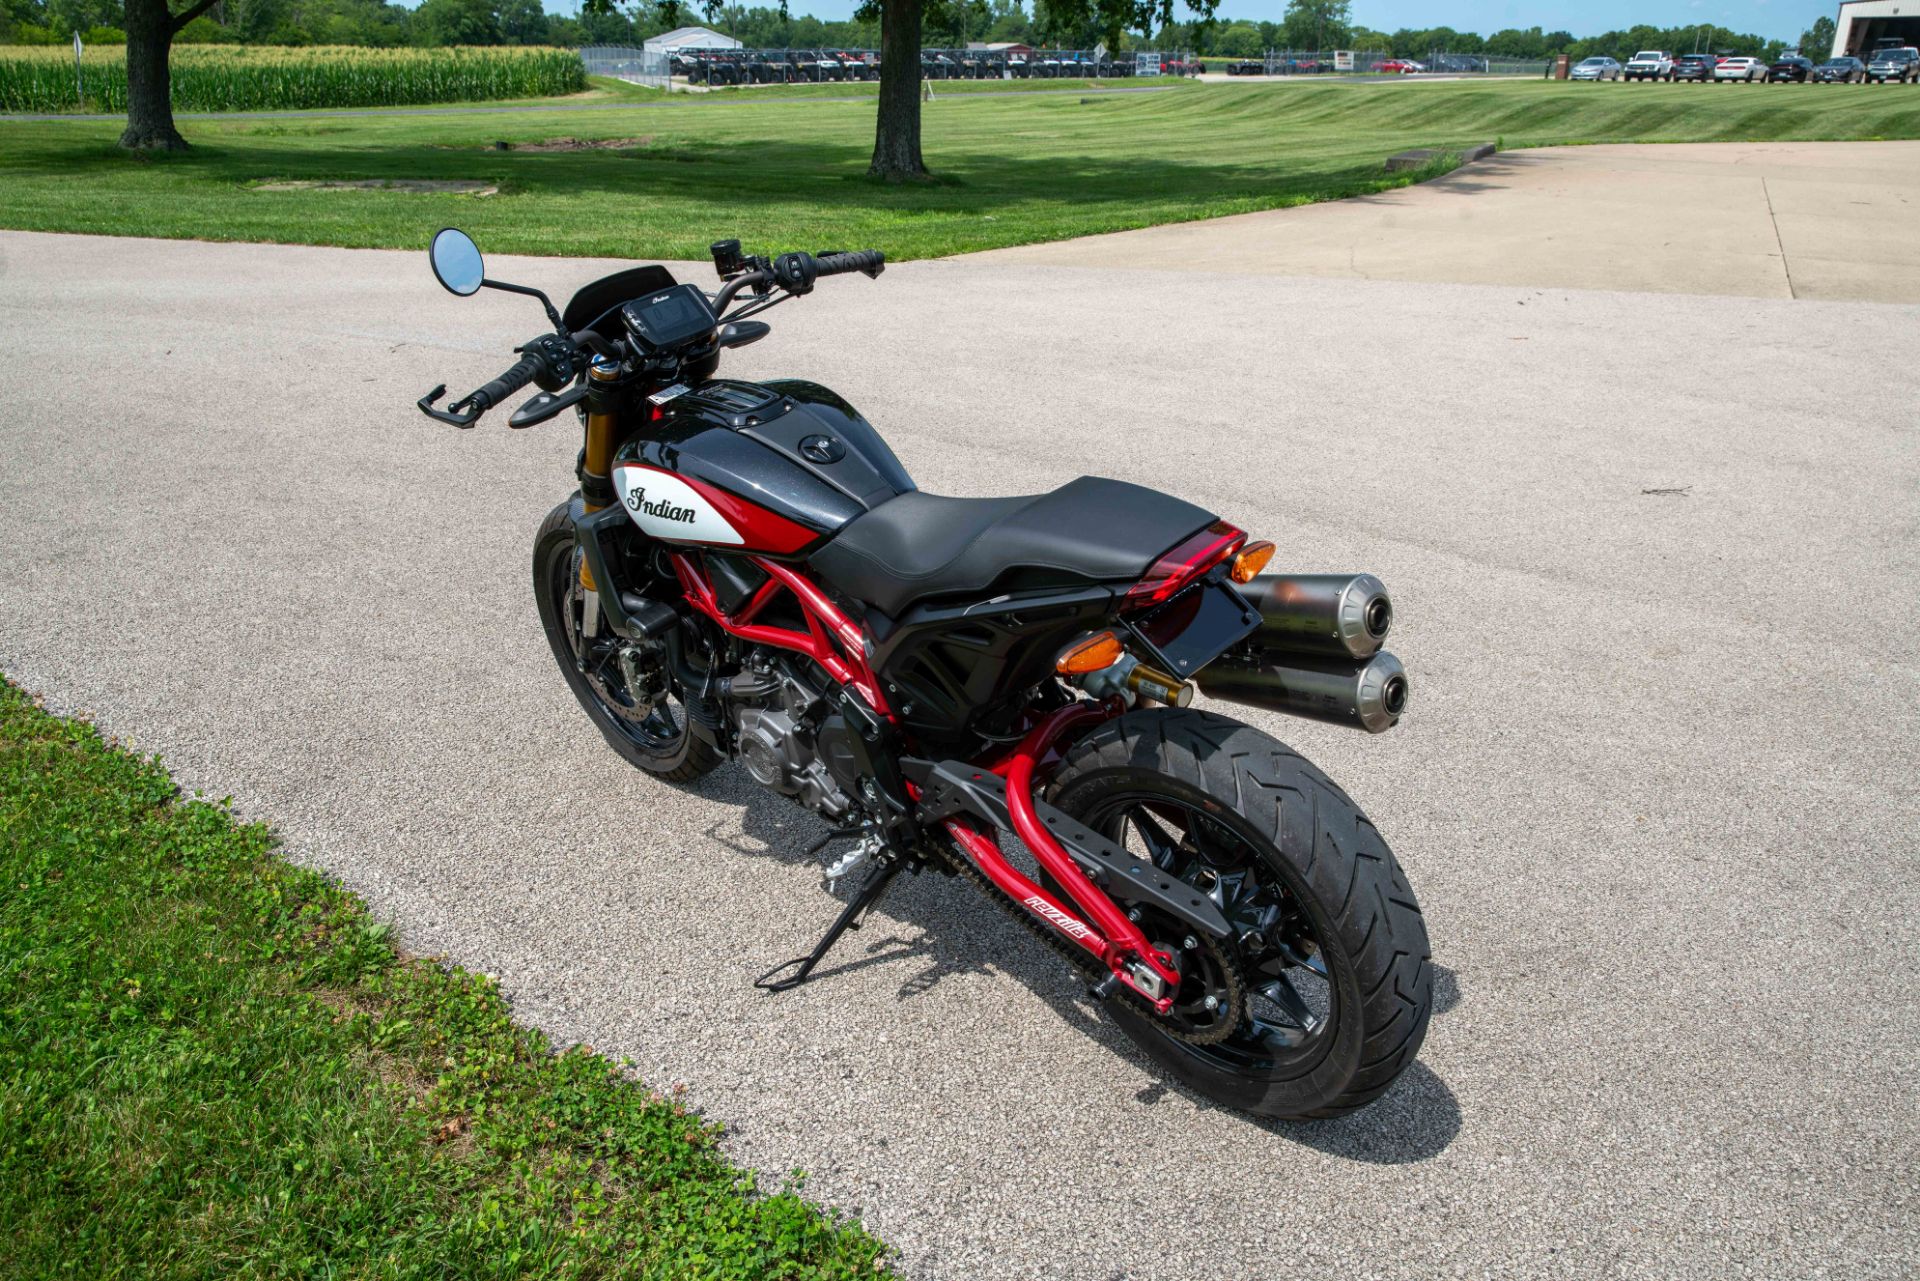 2019 Indian Motorcycle FTR™ 1200 S in Charleston, Illinois - Photo 6